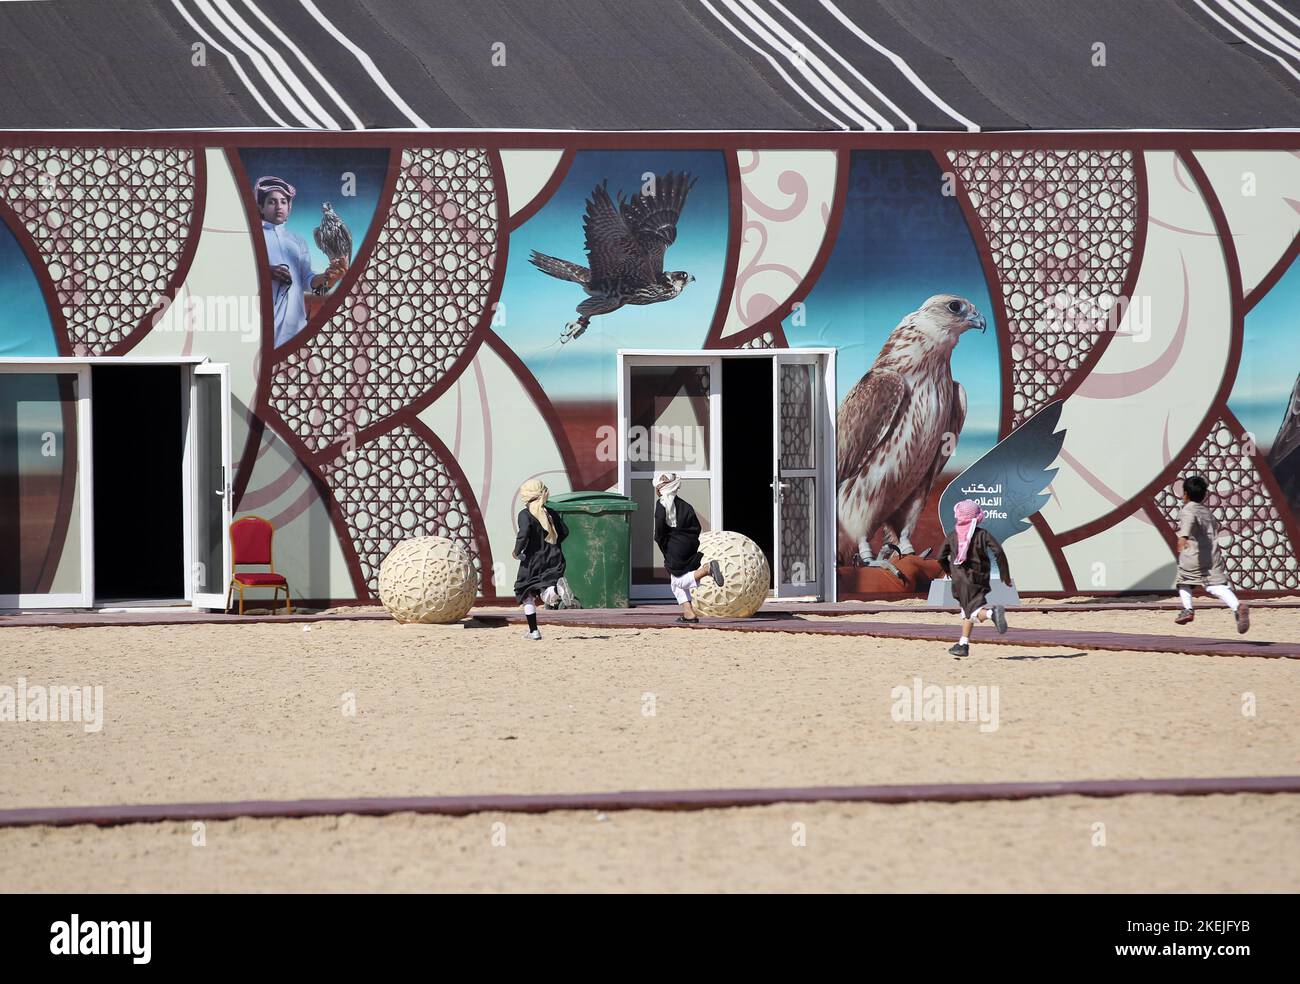 La Società al-Gannas organizzerà il Sesto Festival Internazionale di Falchi e Caccia del Qatar nell'area di Marmi a sealine Falkenjagd in Qatar © diebilderwelt / Alamy Stock Foto Stock